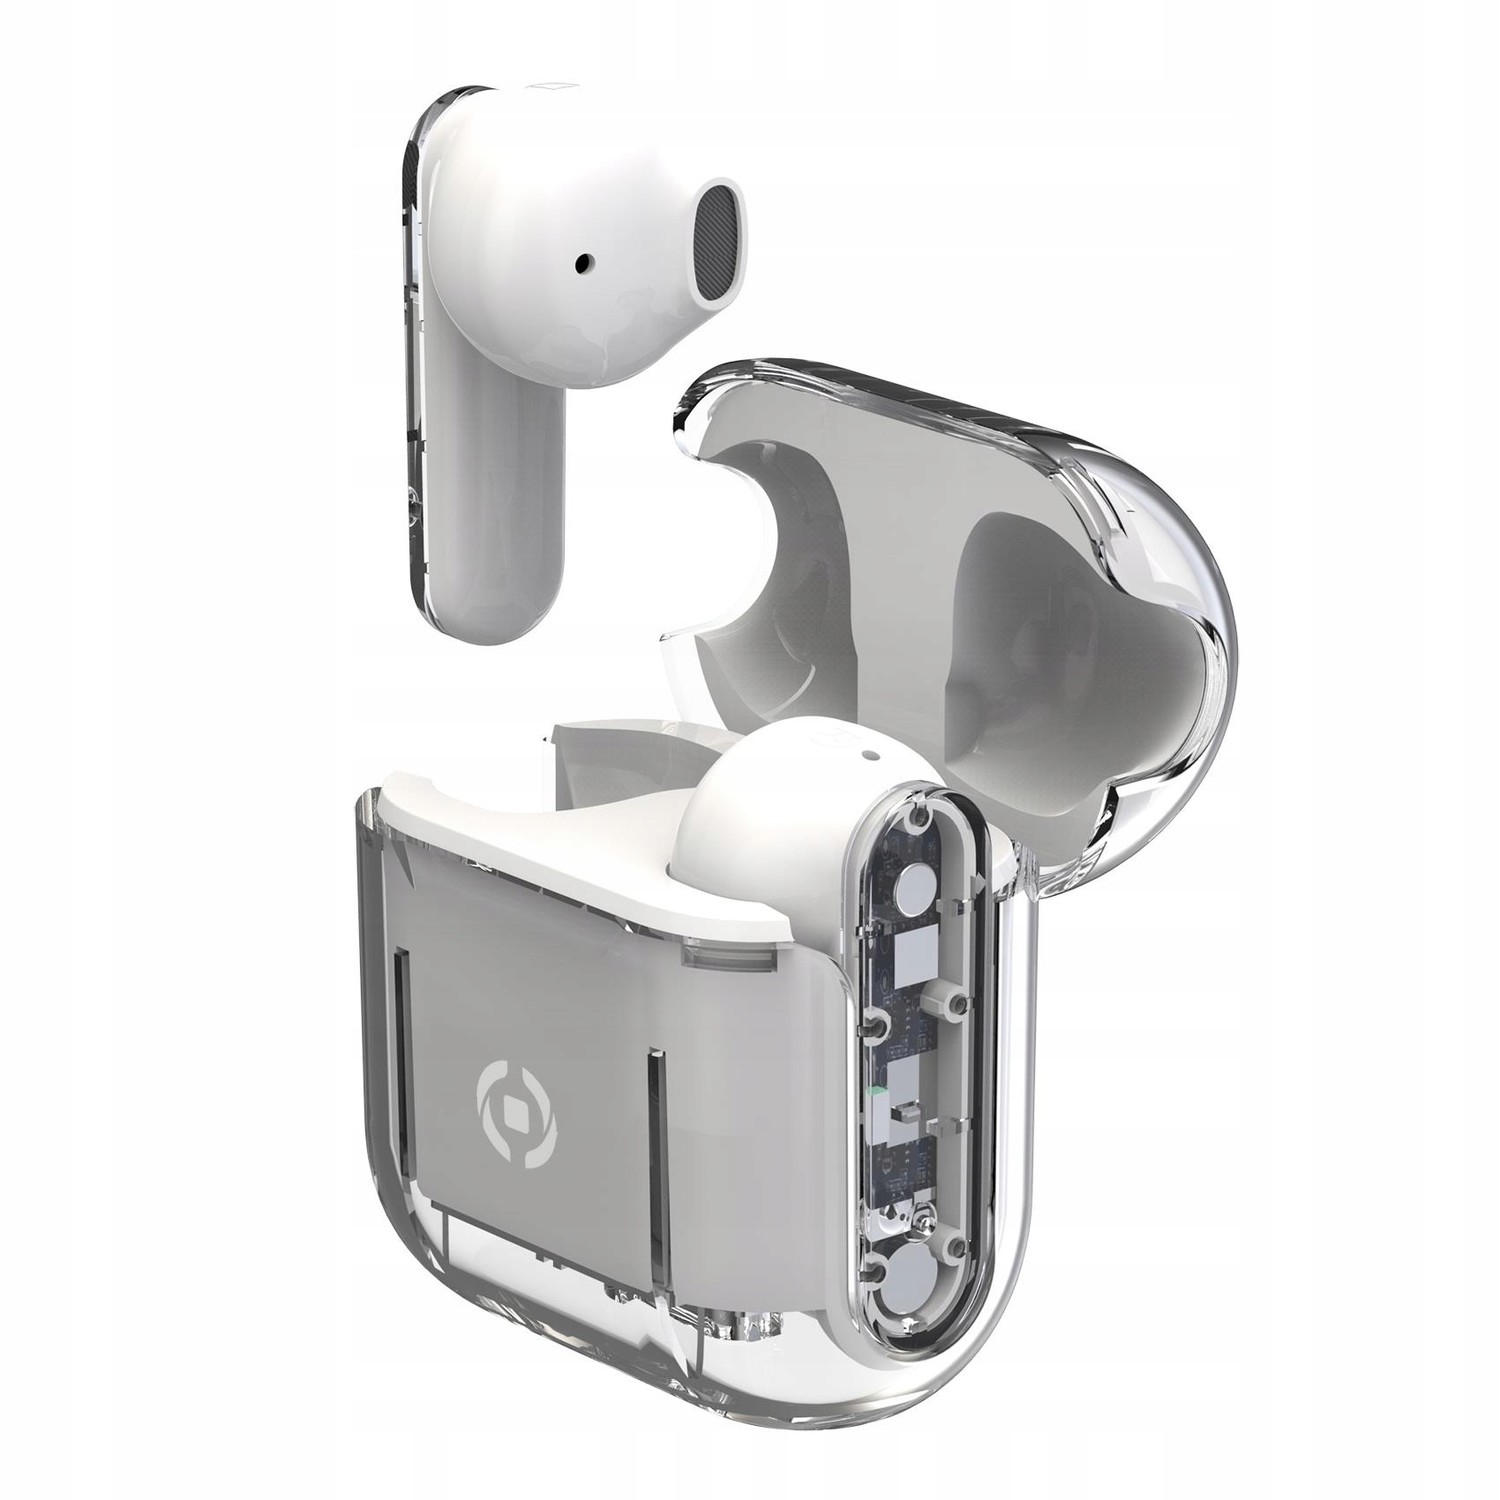 True Wireless sluchátka Celly Bt, nabíjecí pouzdro, mikrofon, ovládání